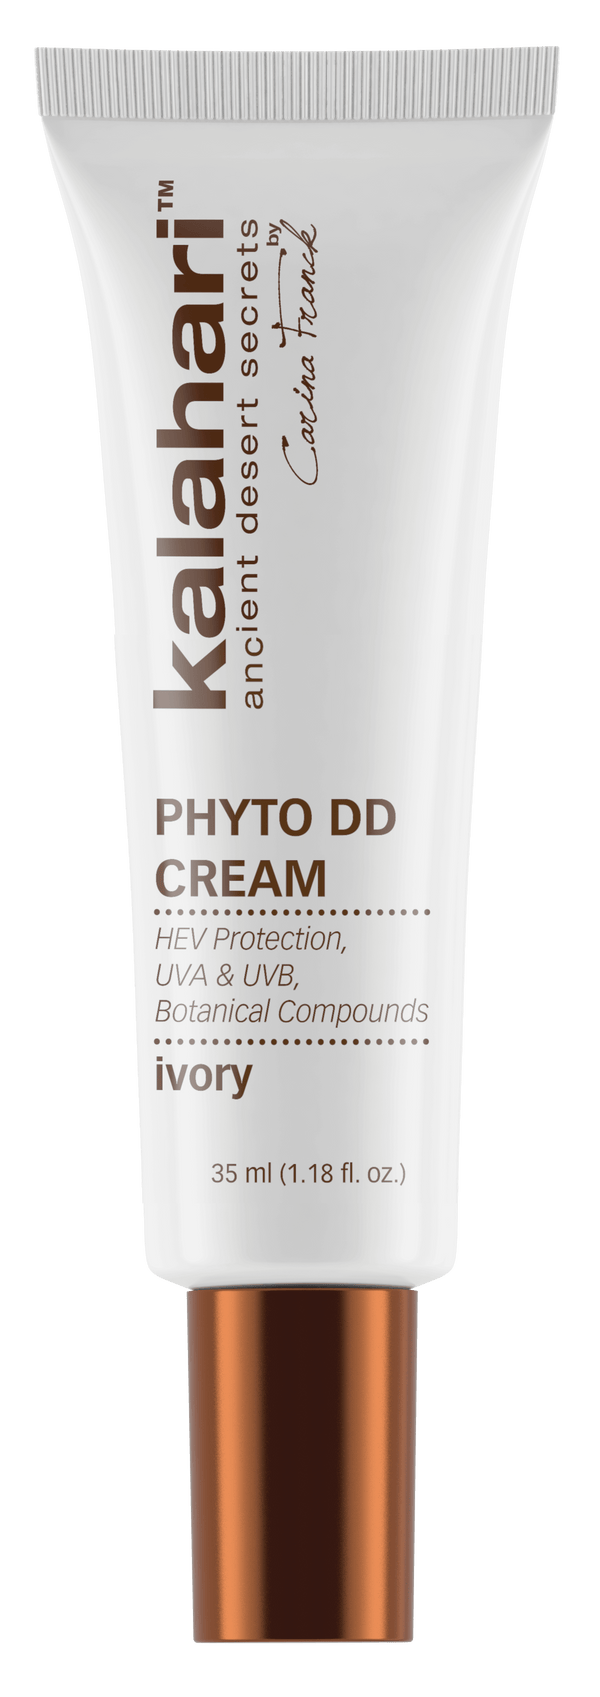 Phyto dd cream ivory